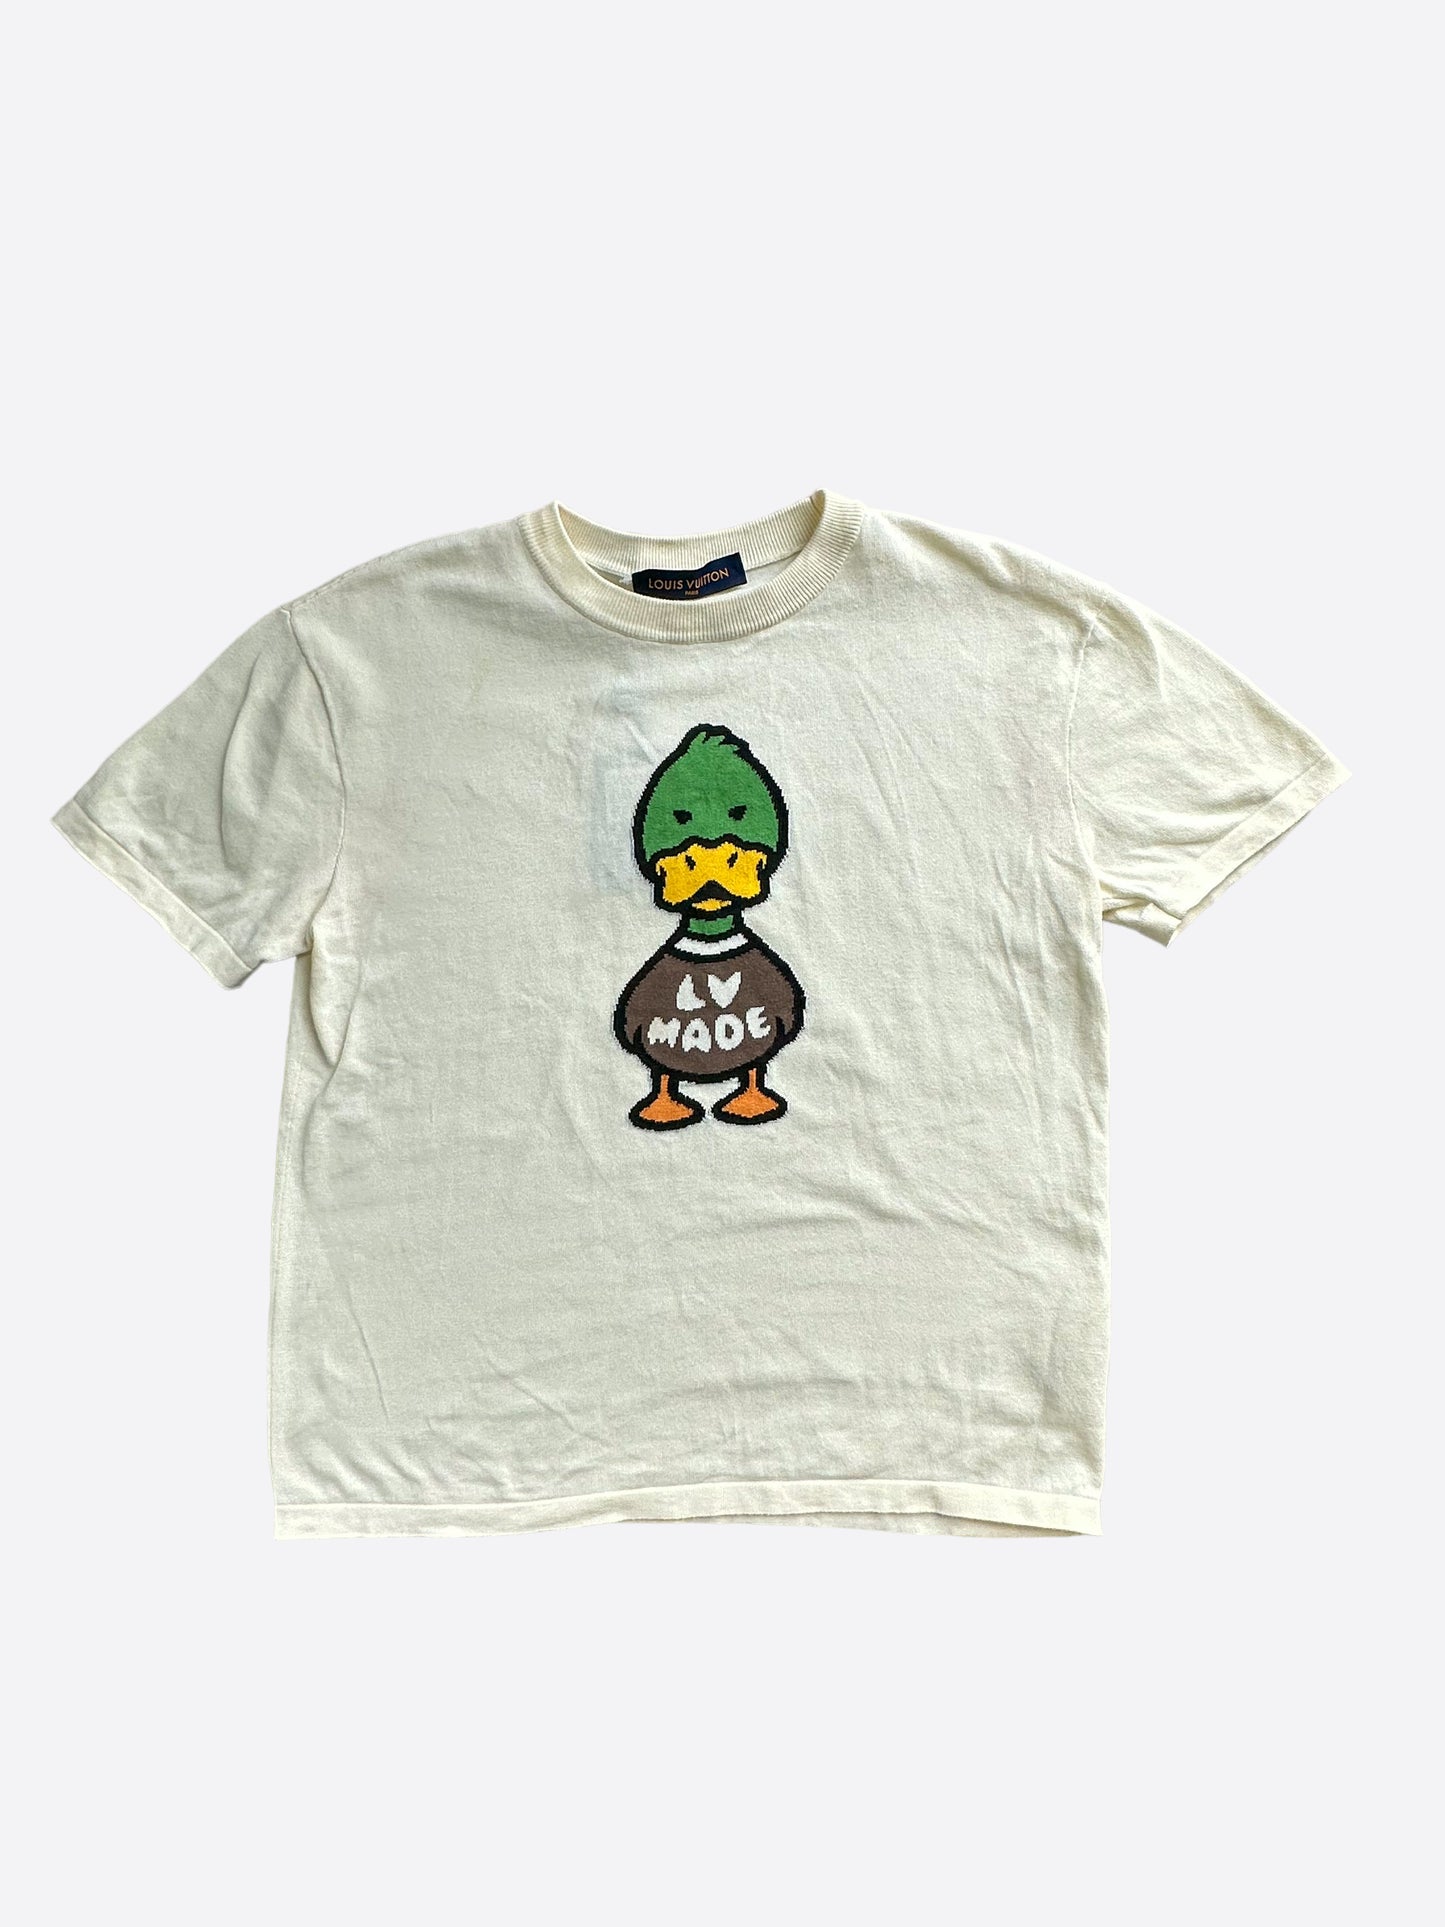 Nueva camiseta LV love made duck